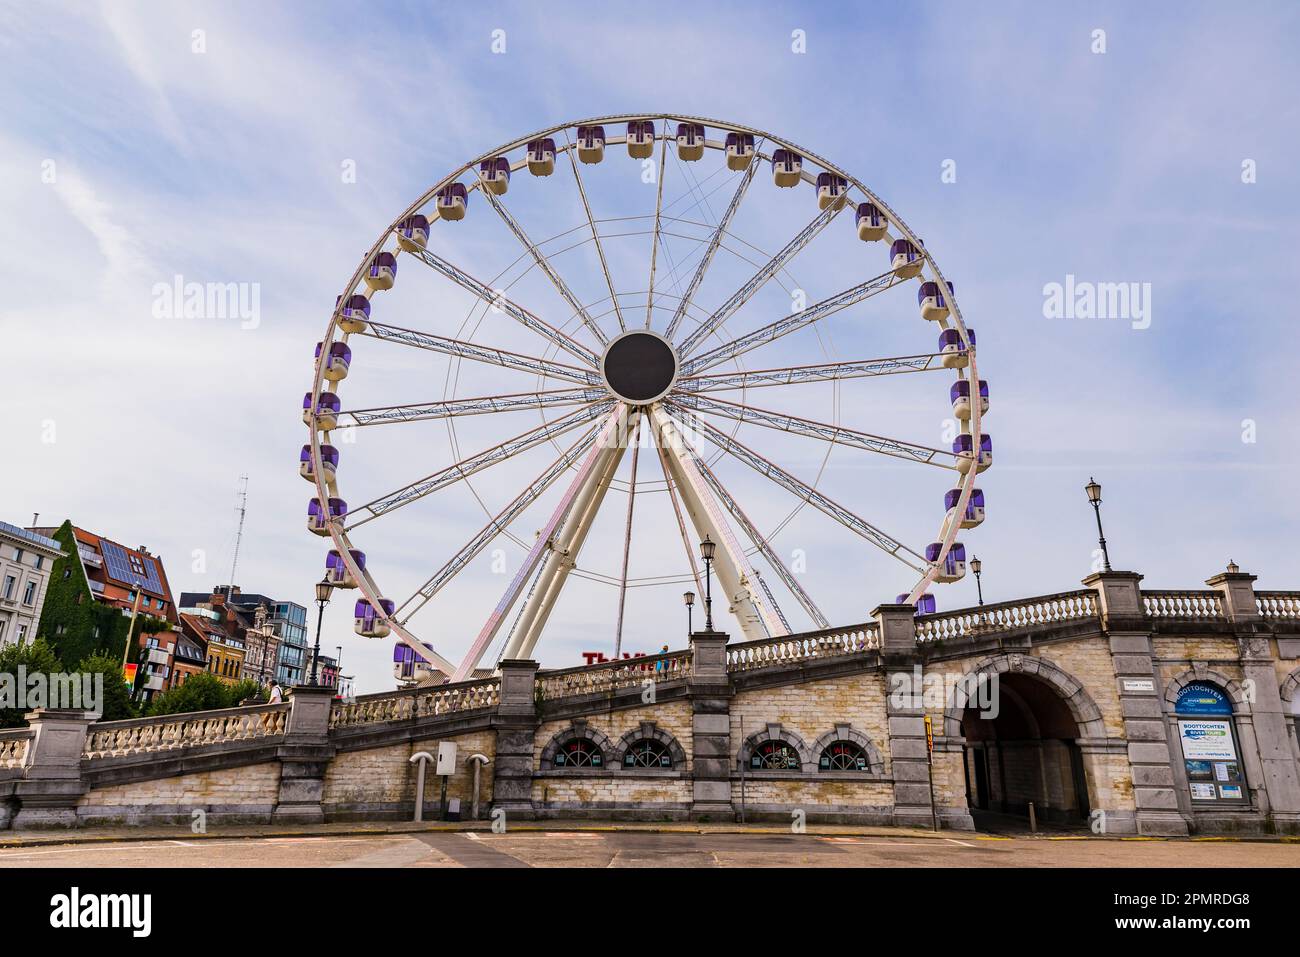 La vue, la grande roue d'Anvers à Steenplein. Anvers, région flamande, Belgique, Europe Banque D'Images